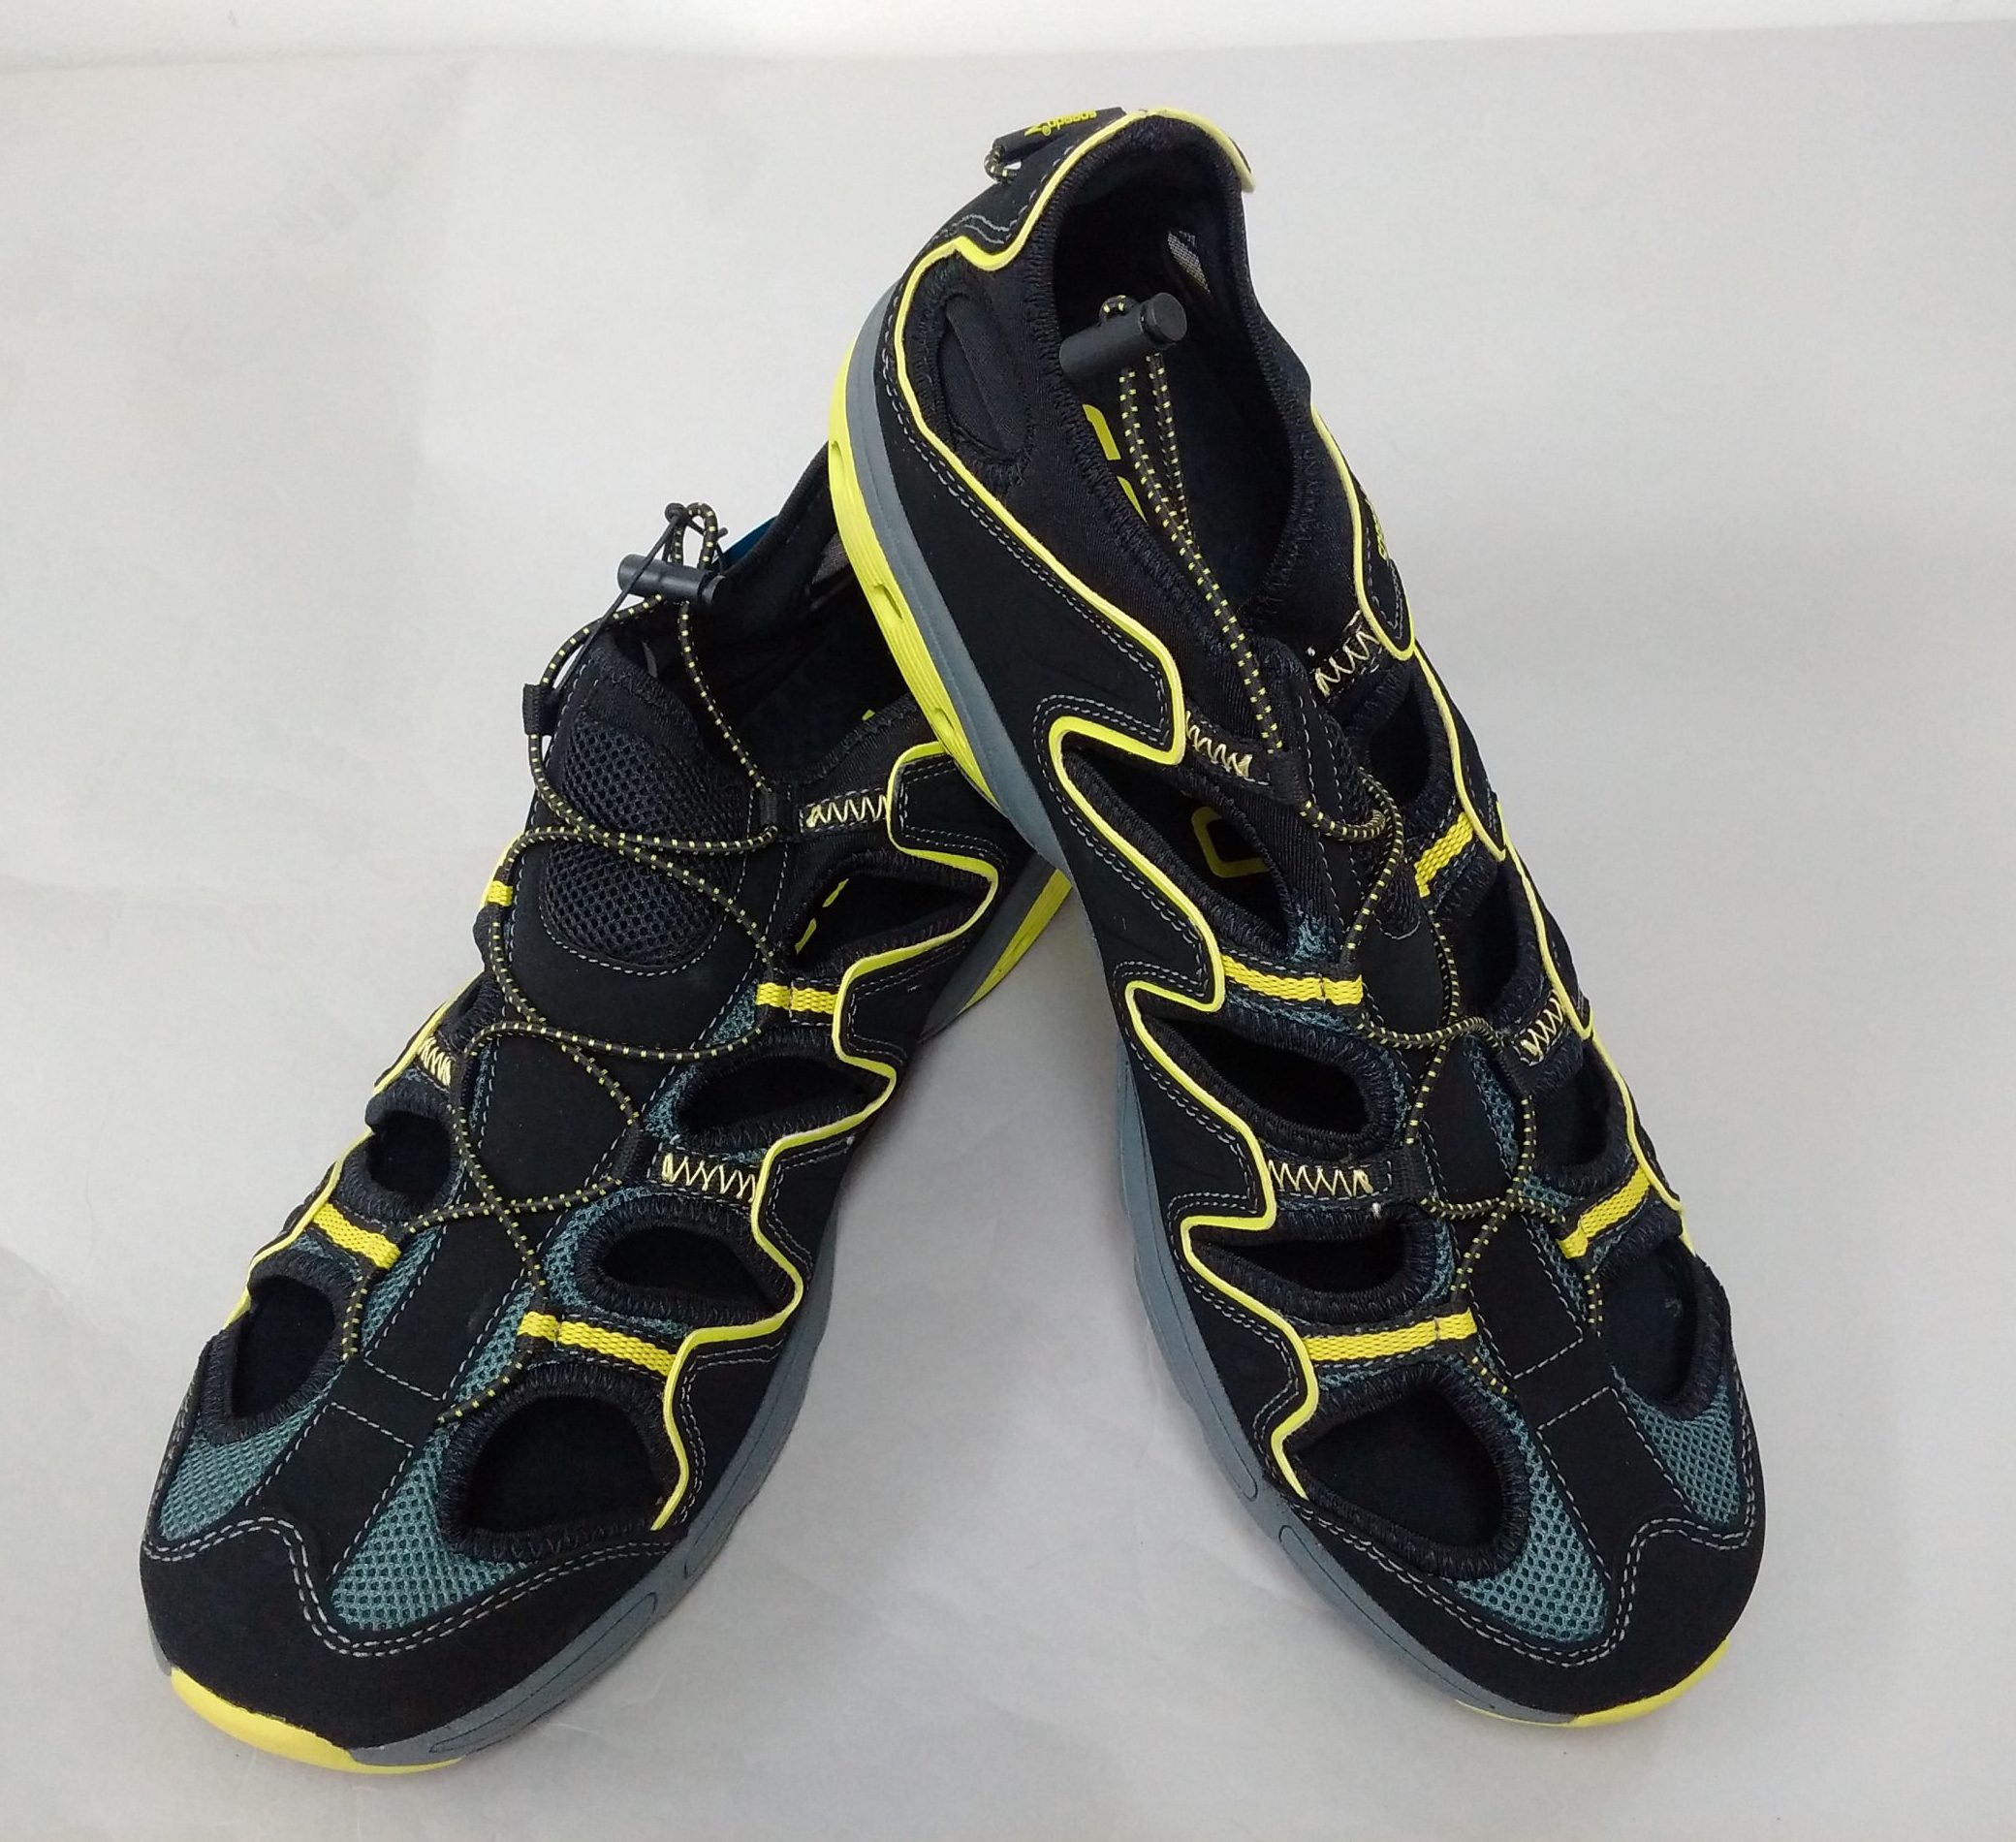 speedo men's hydro comfort 4. water shoe